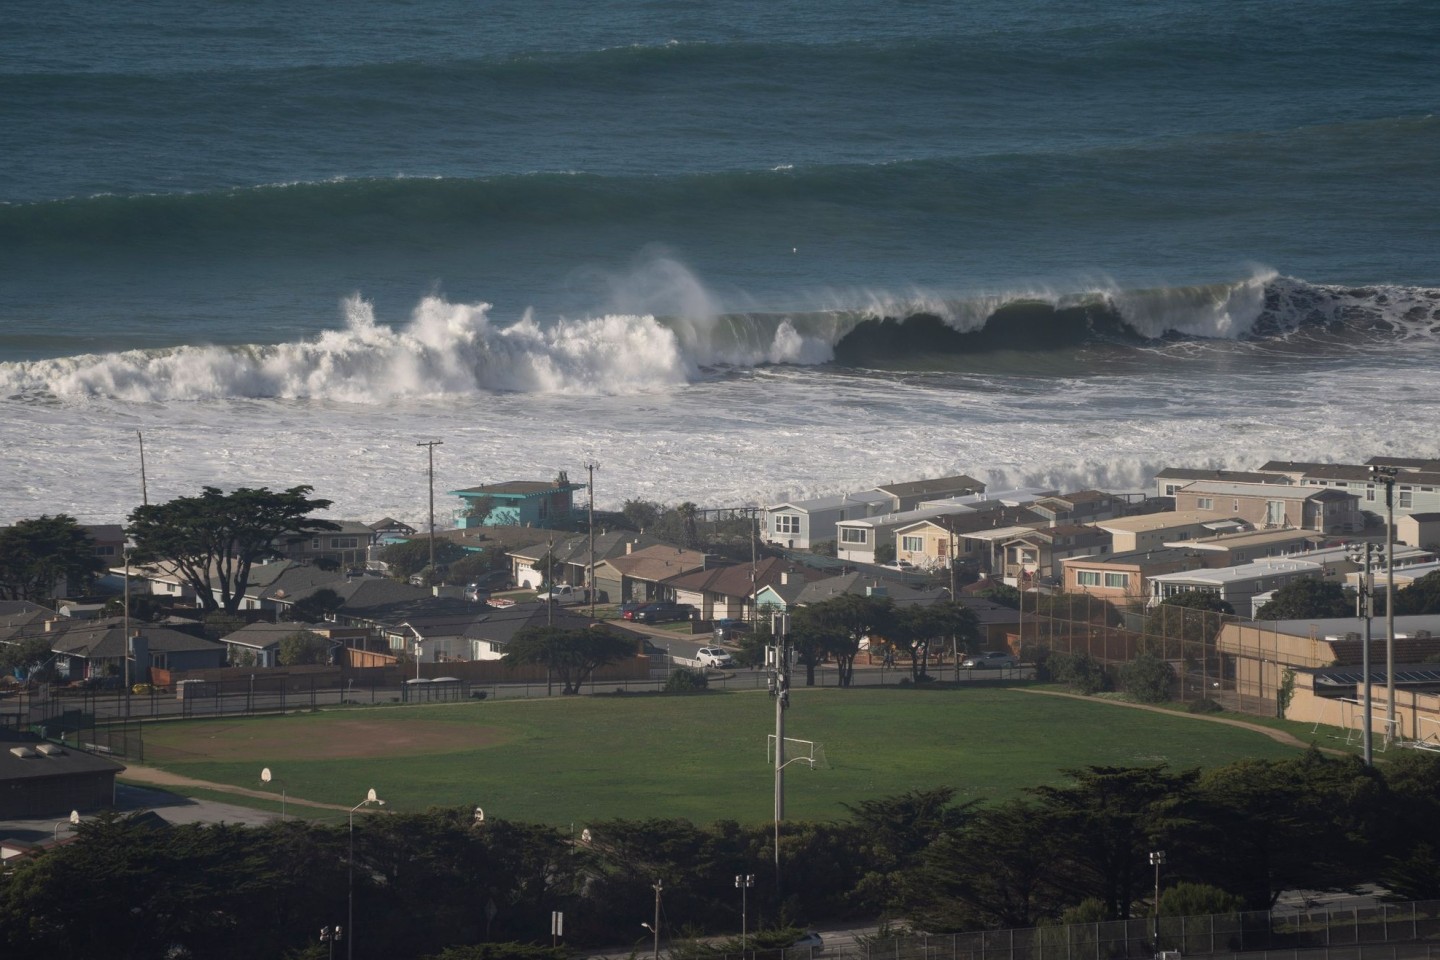 Gefährliche Monsterwellen» wüten vor kalifornischer Küste